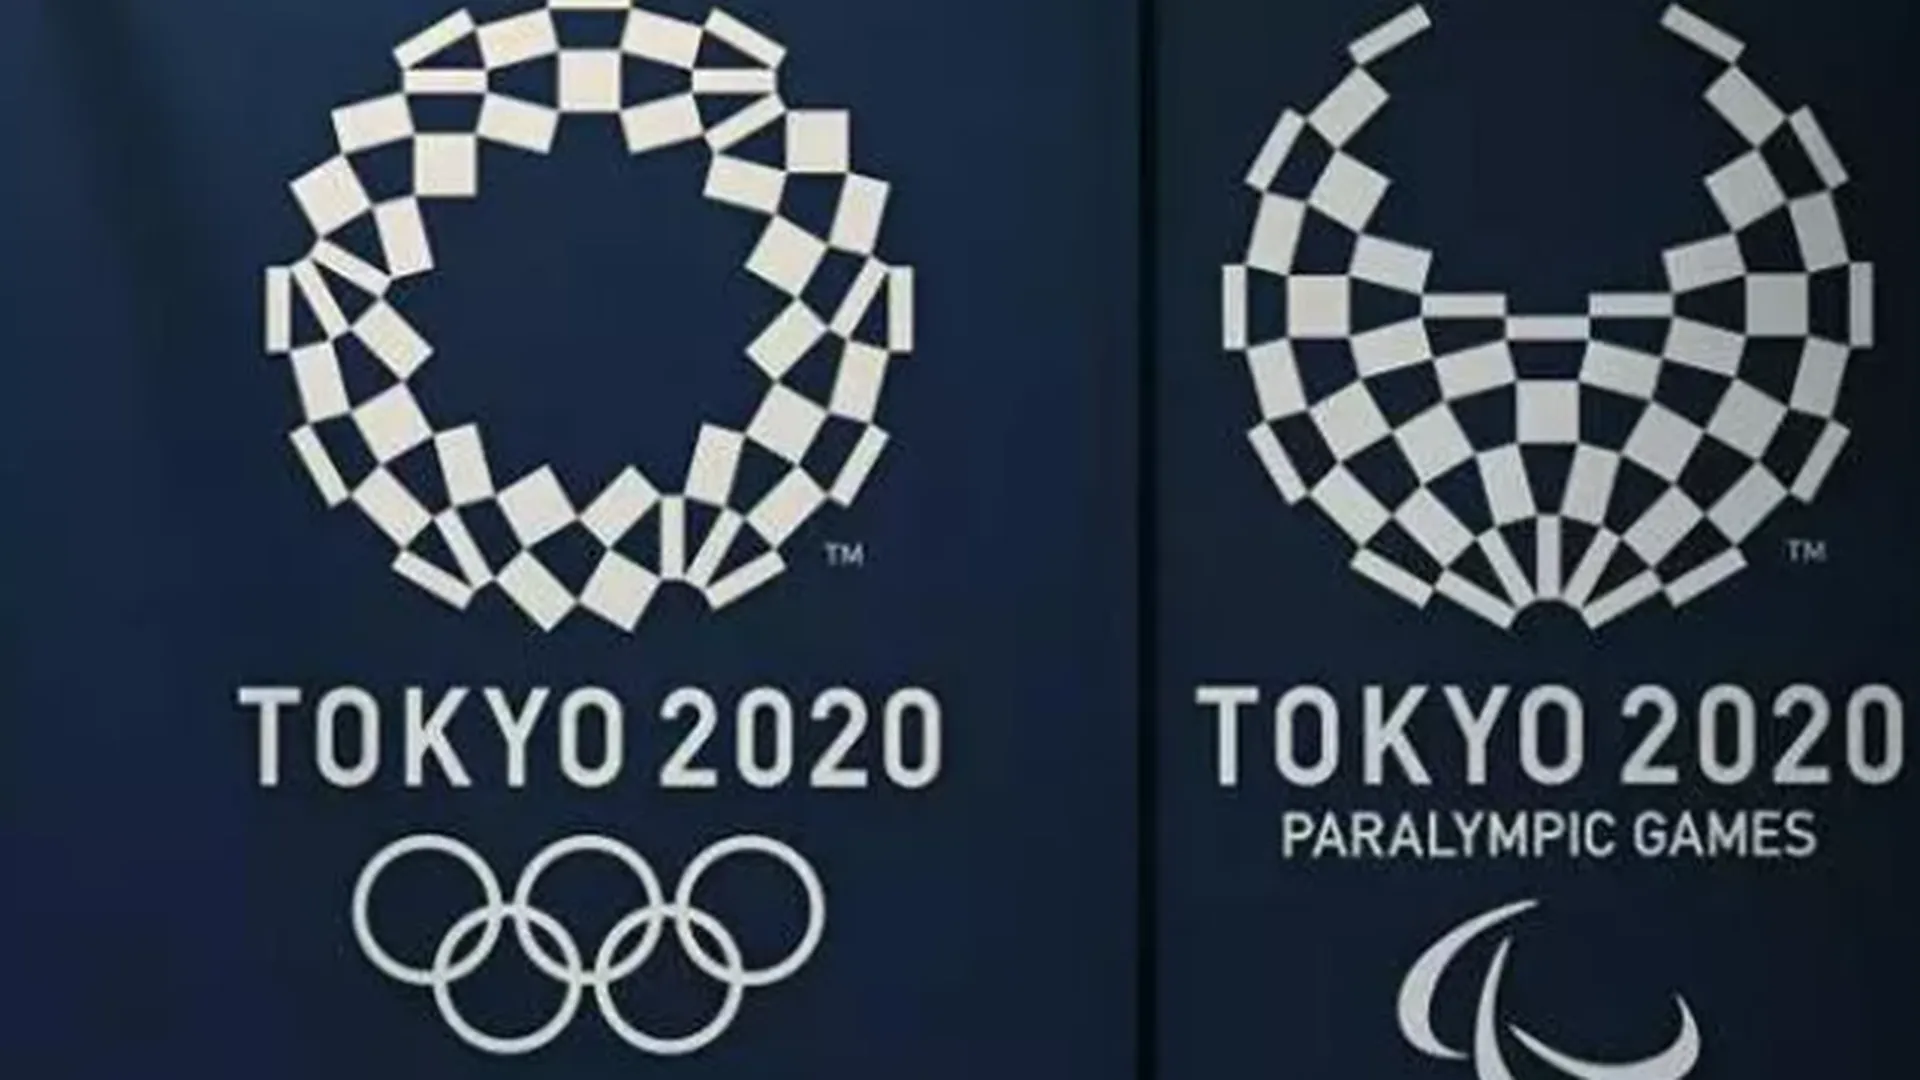 Сборная России заняла 4 место в медальном зачете Паралимпиады в Токио